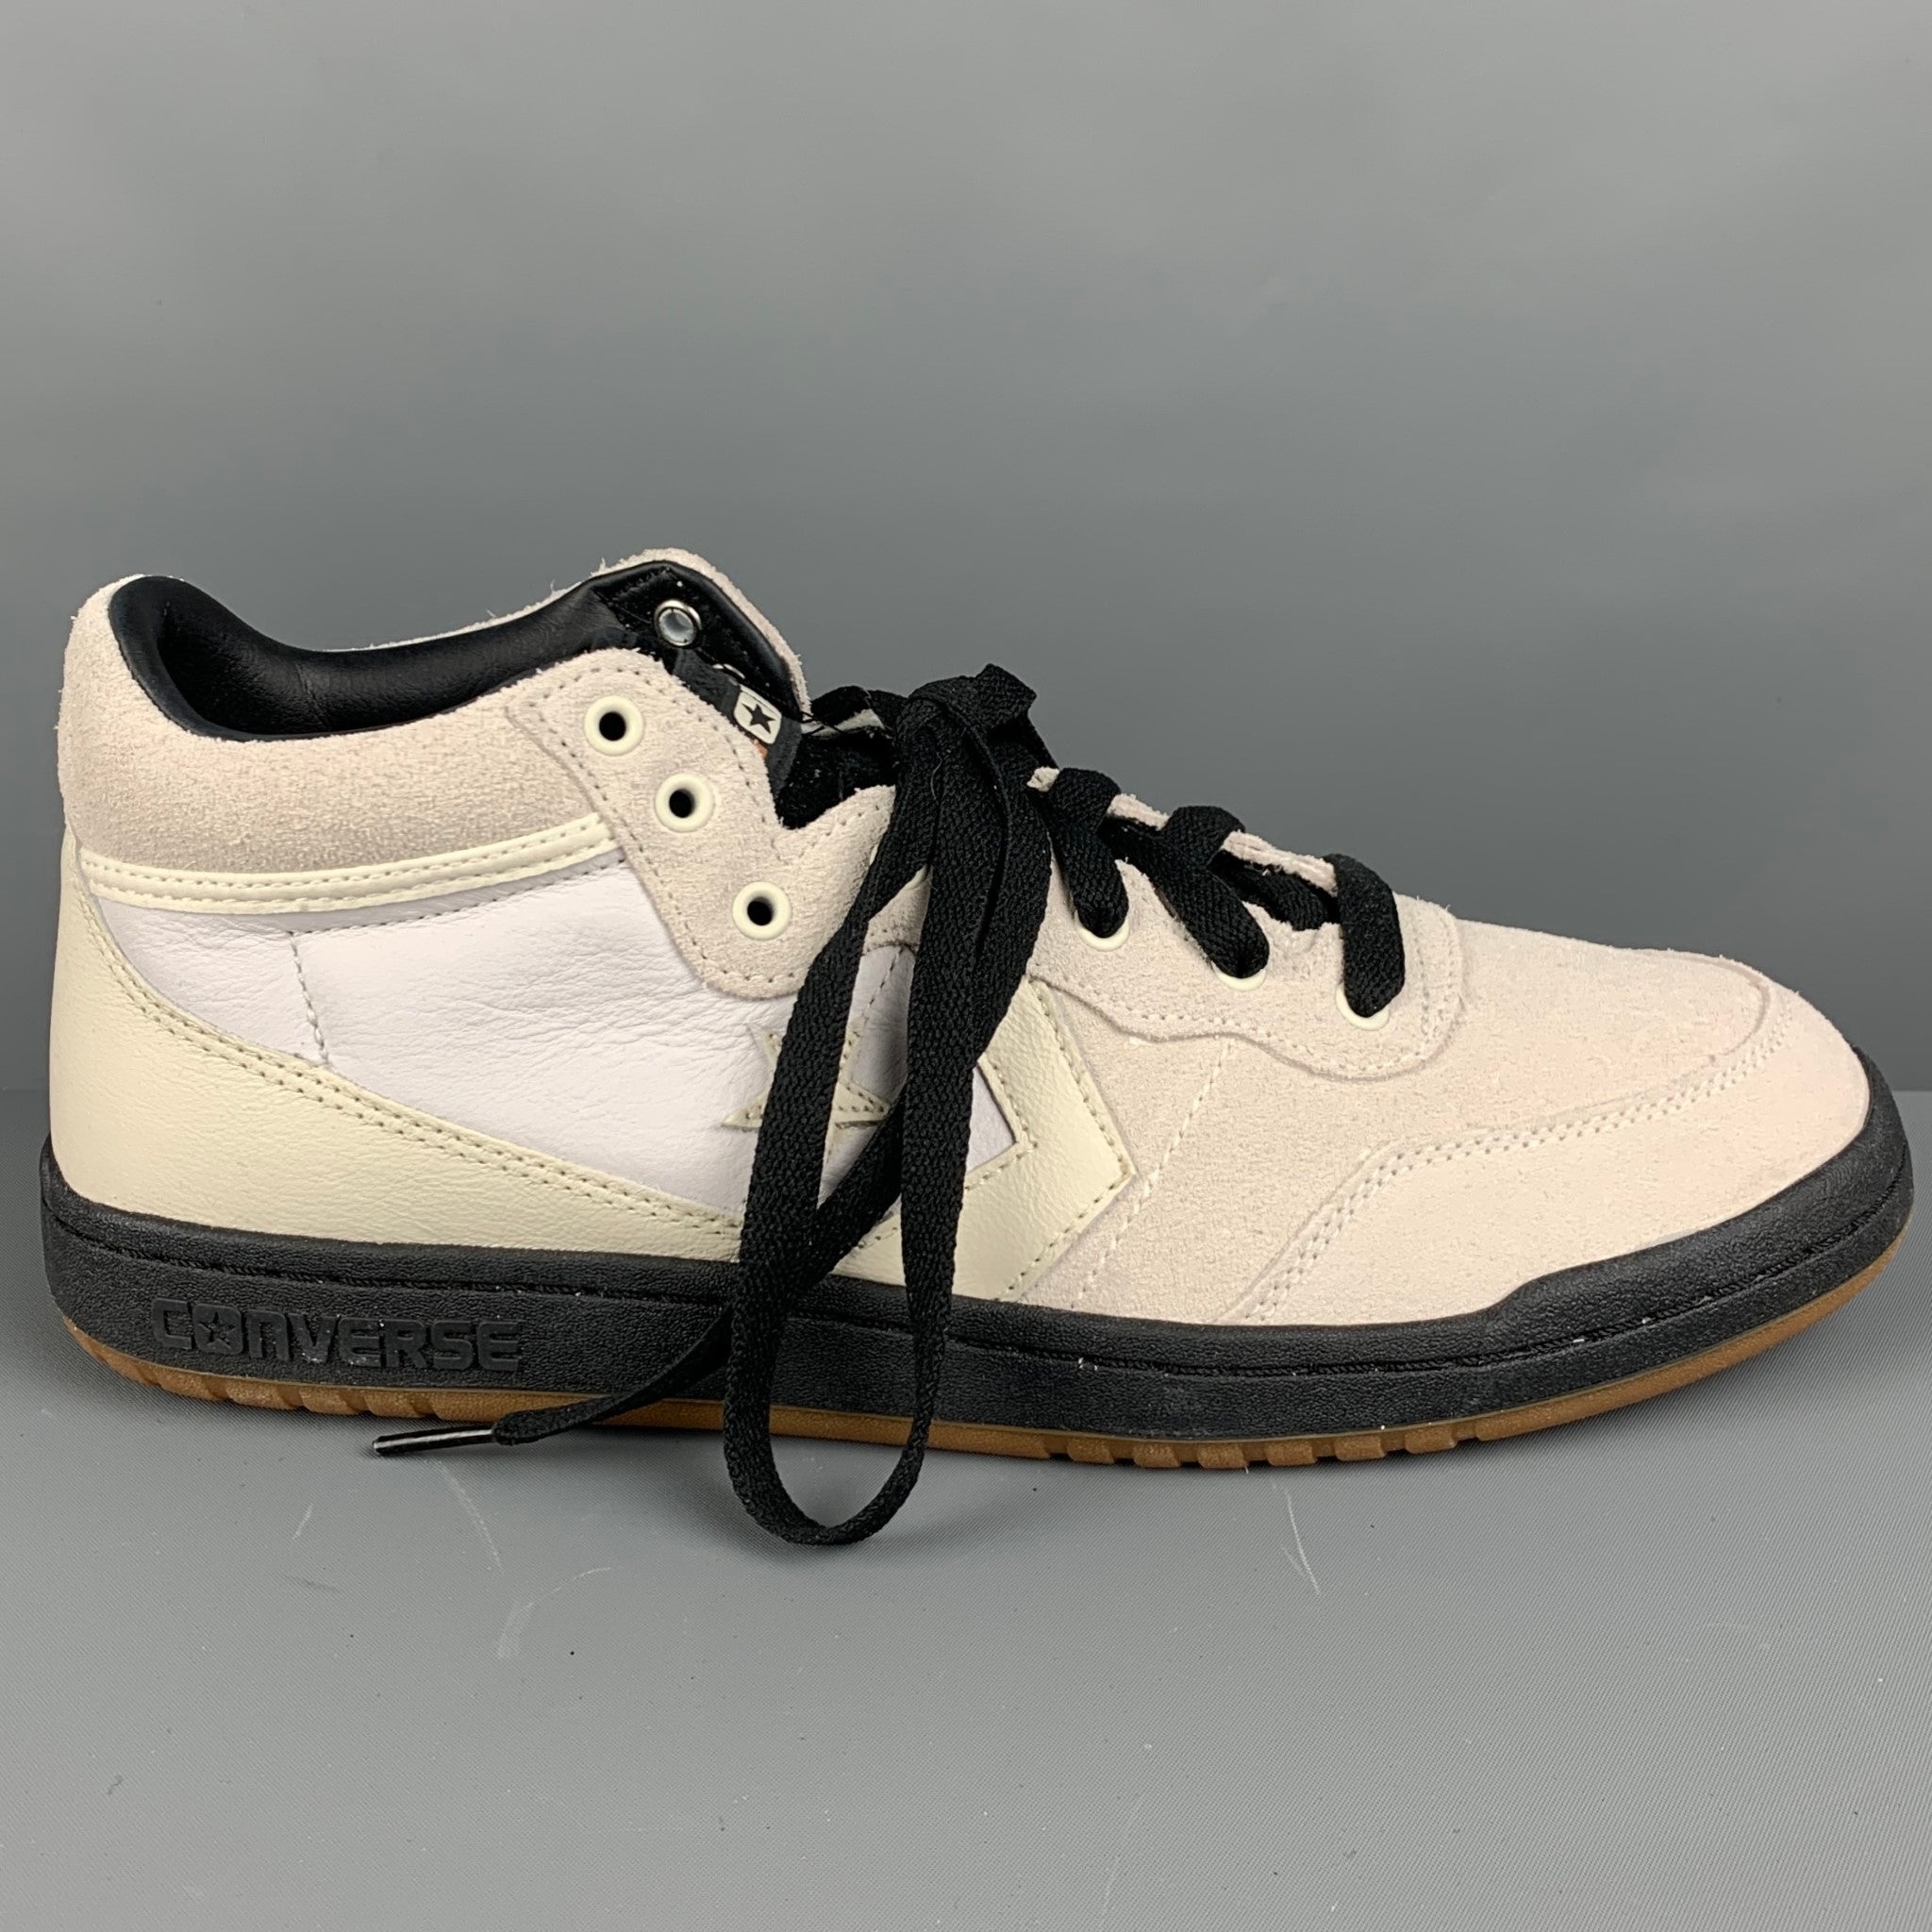 Men's shoes Converse Chuck 70 Leather Black/ White/ Egret | Footshop